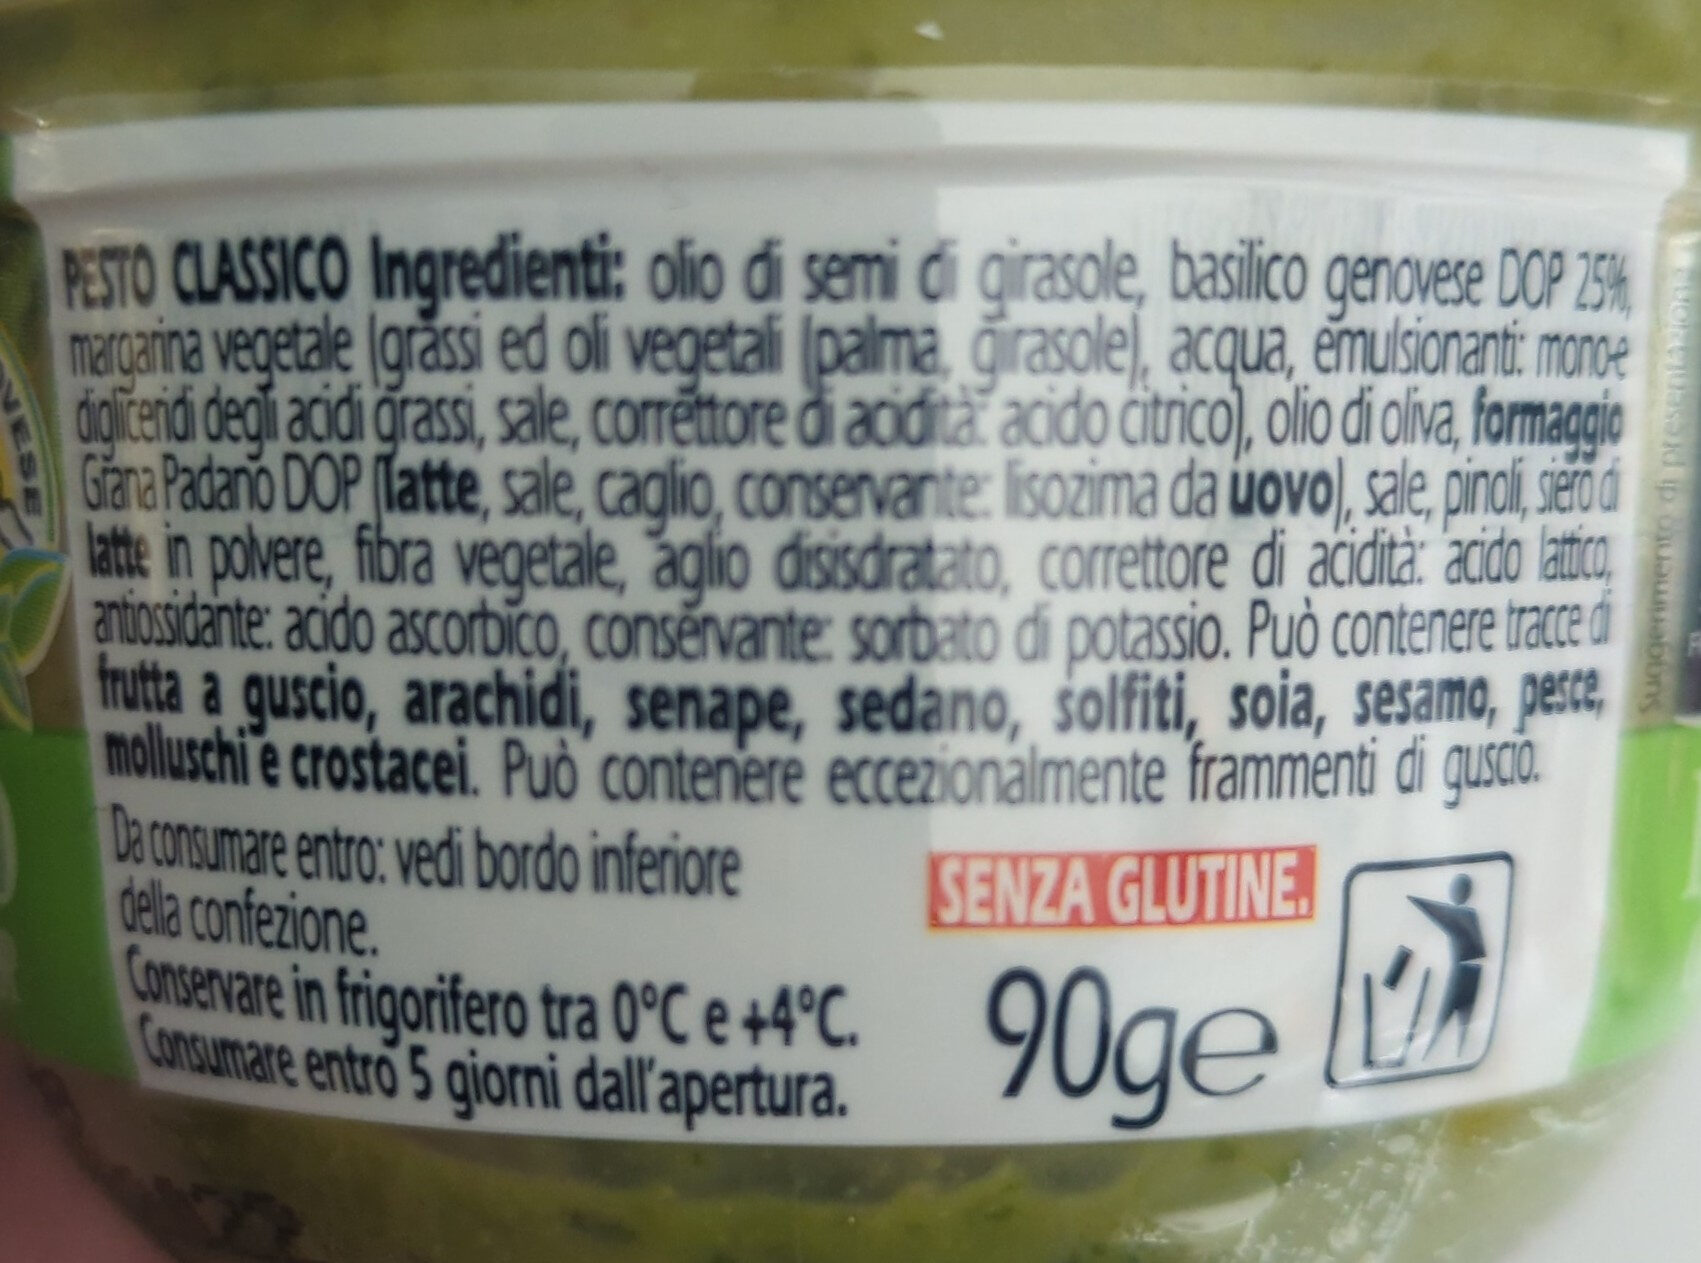 Pesto Classico con Basilico Genovese DOP - Ingredients - it